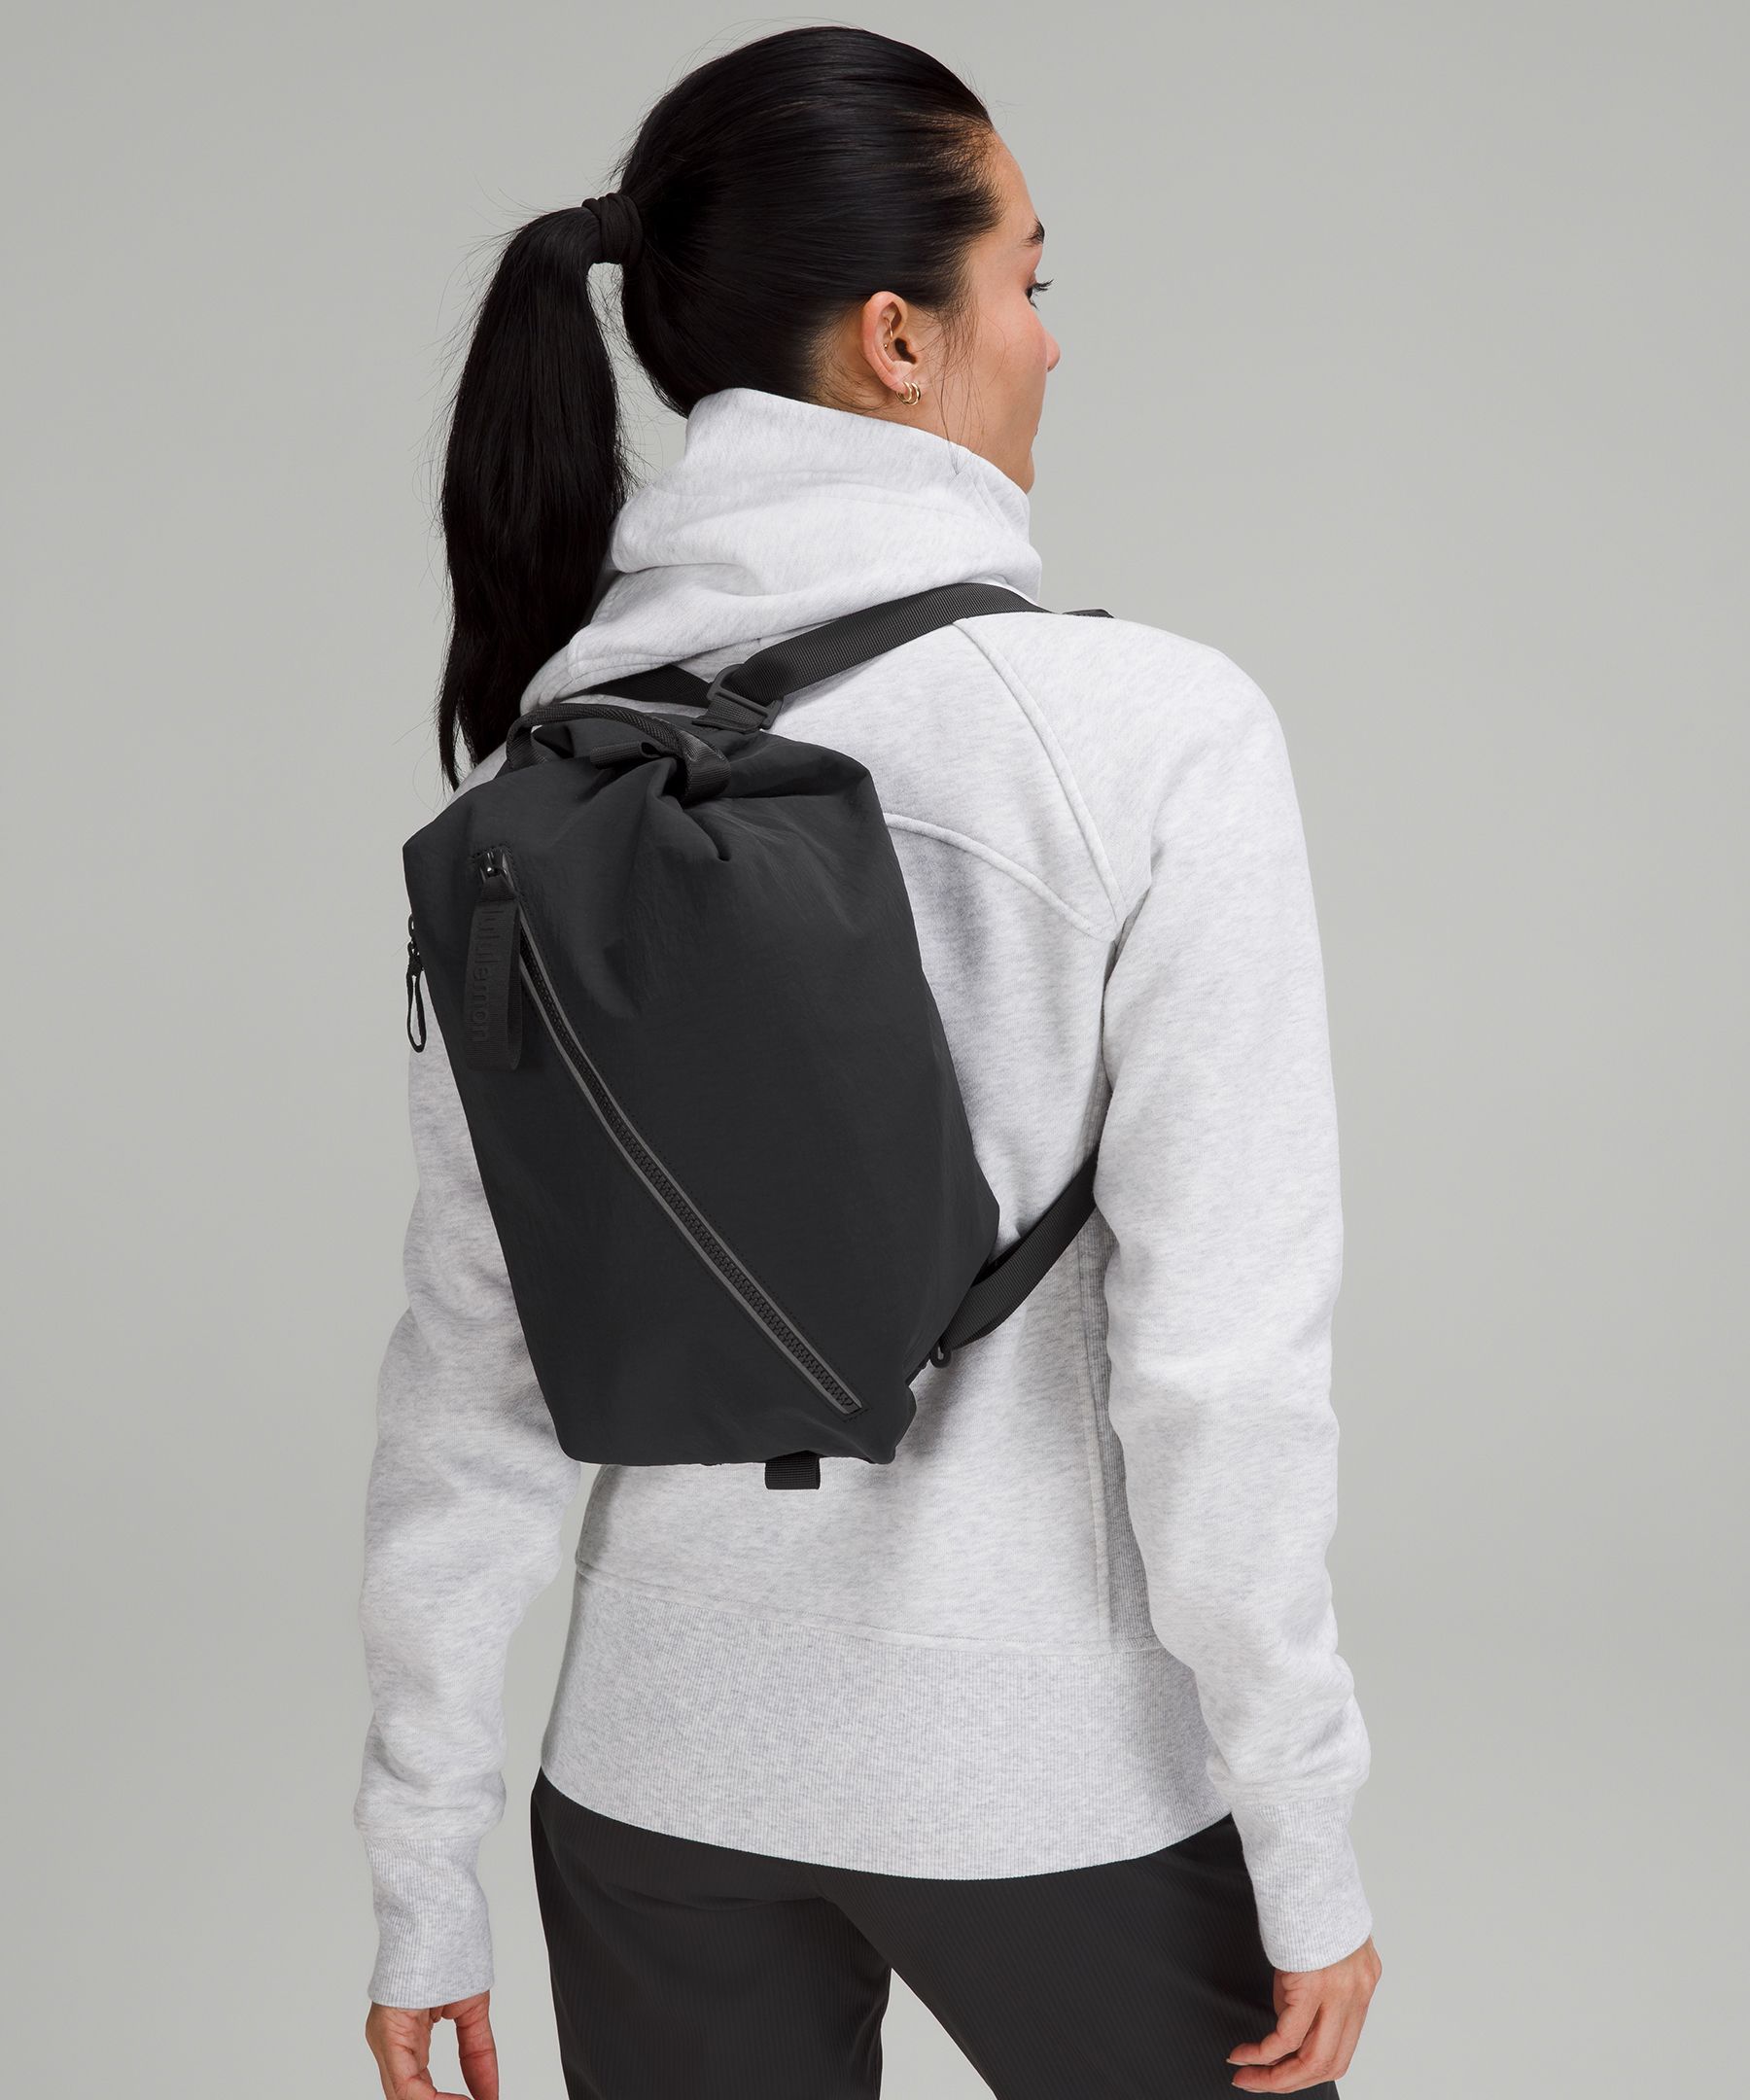 Lululemon fast track bag 2.0 - Women's handbags